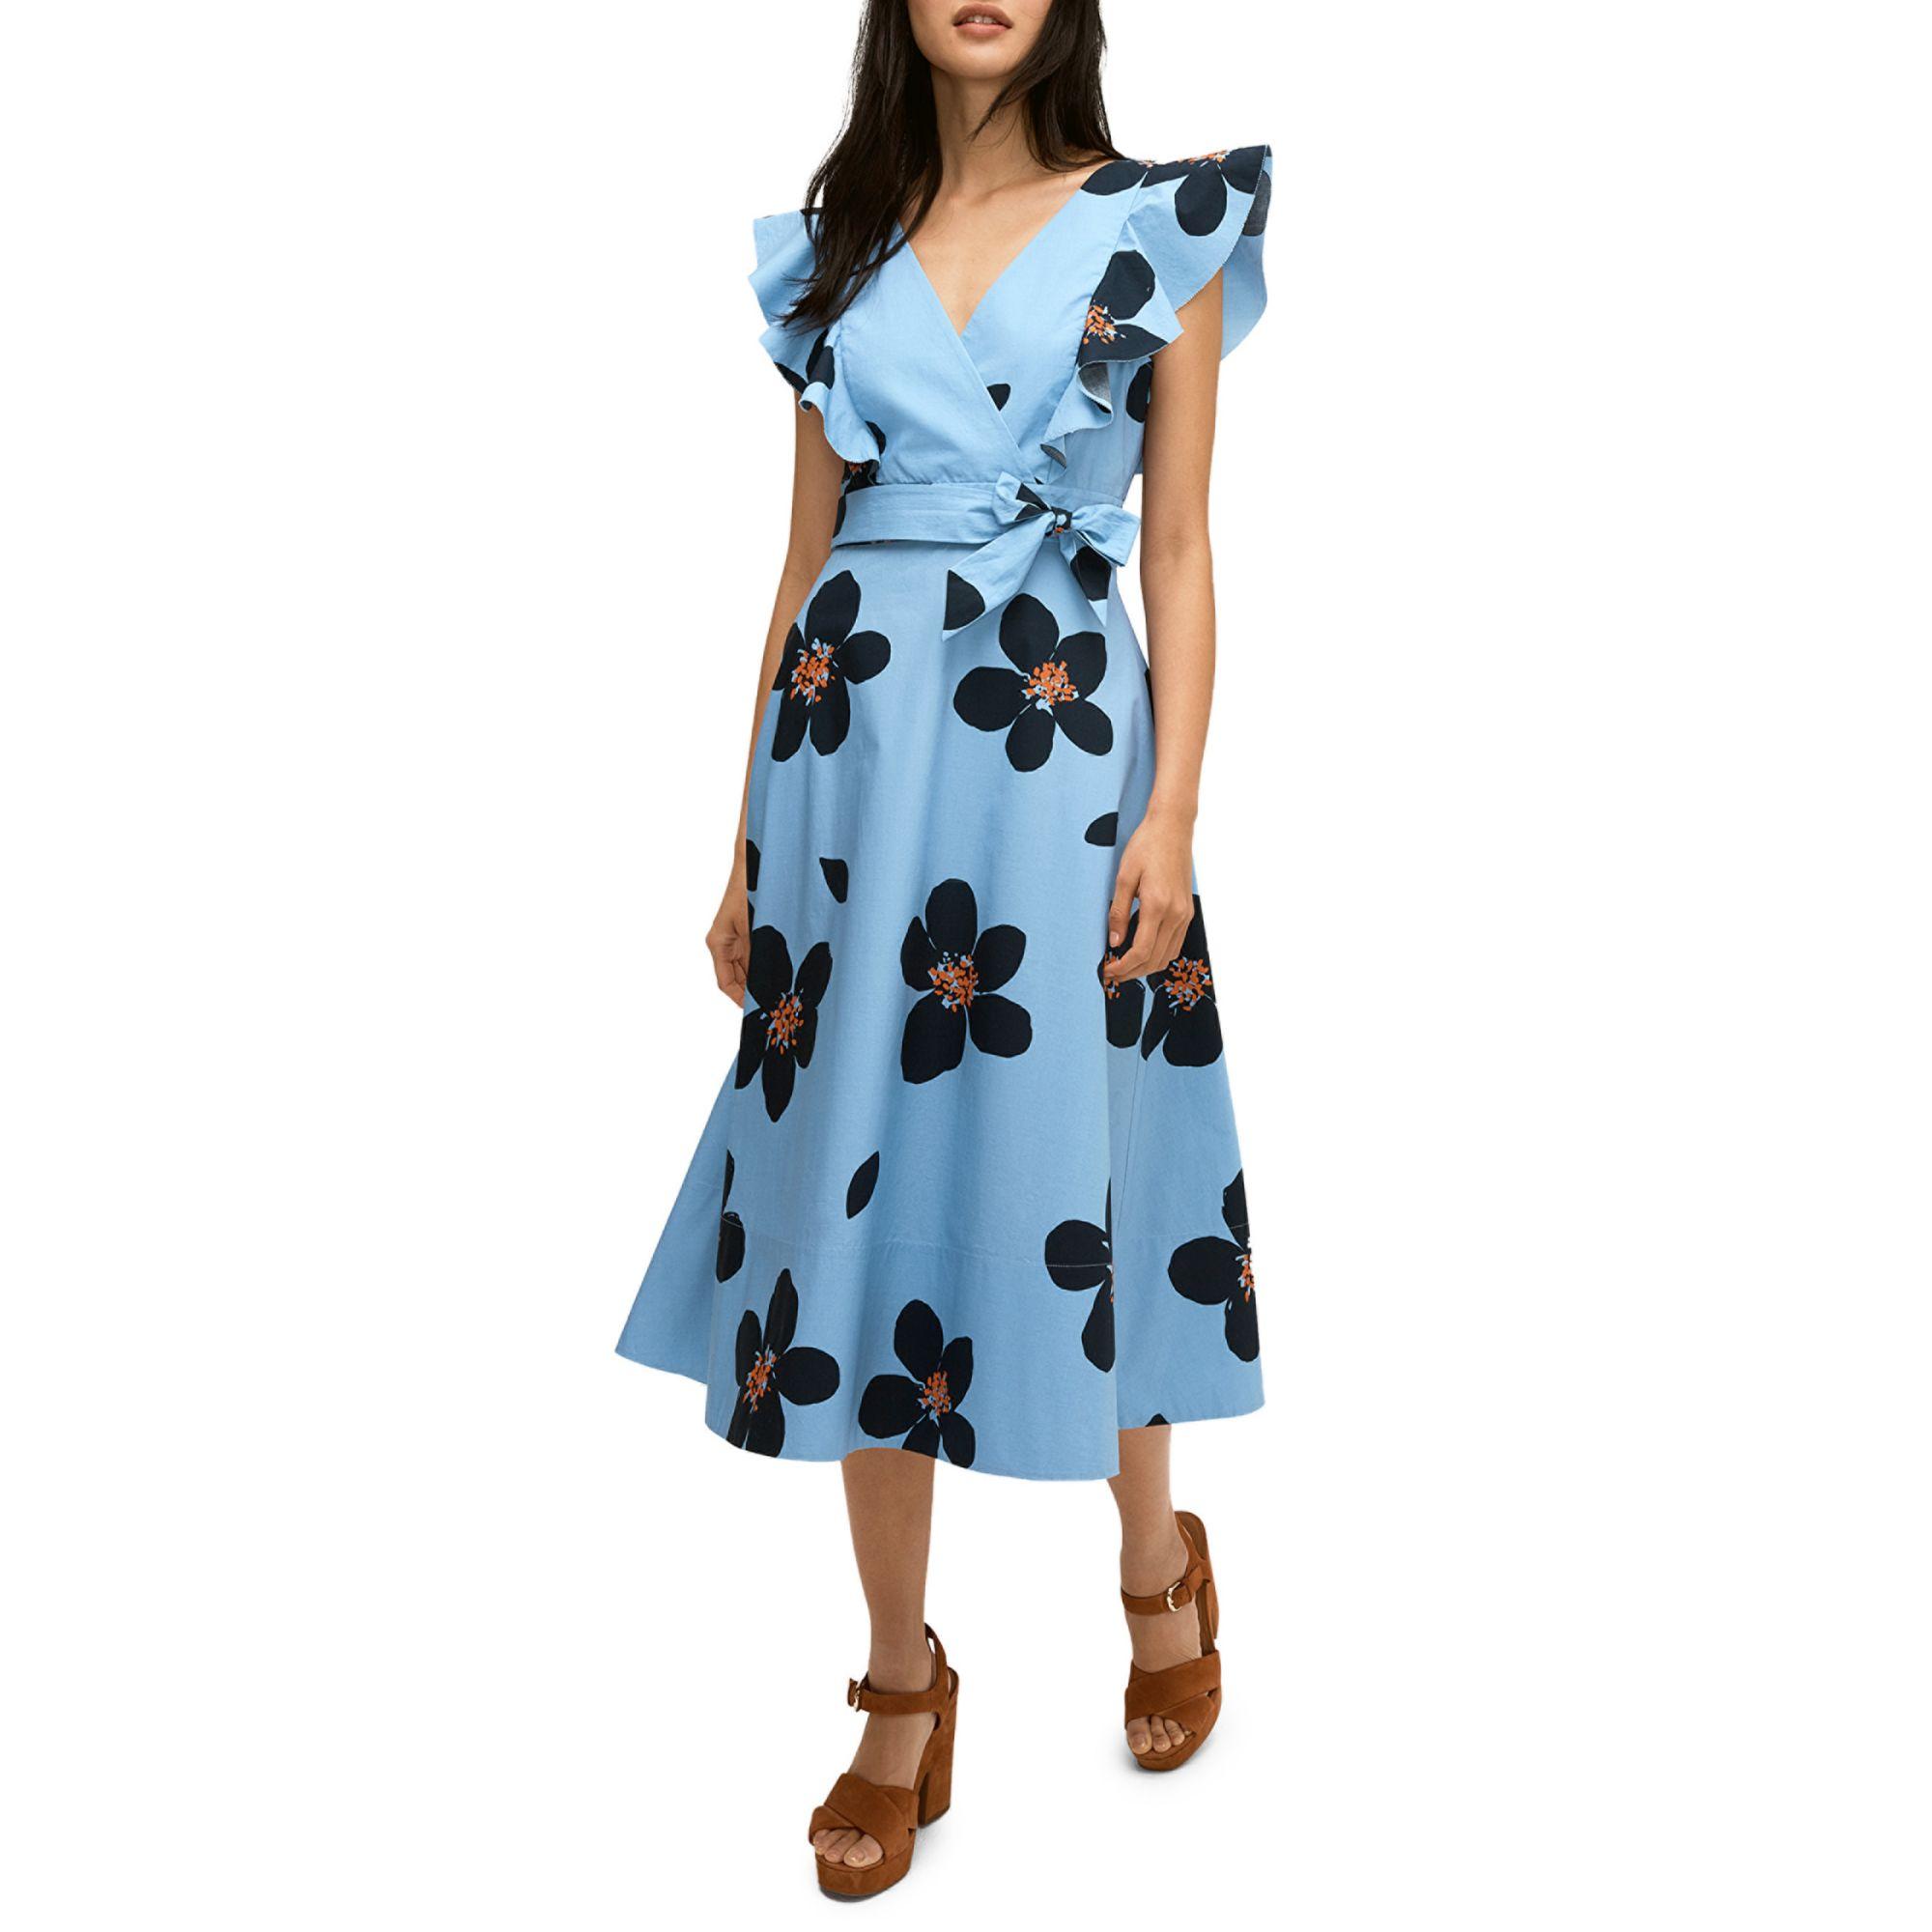 wrap dress blue floral Big sale - OFF 67%